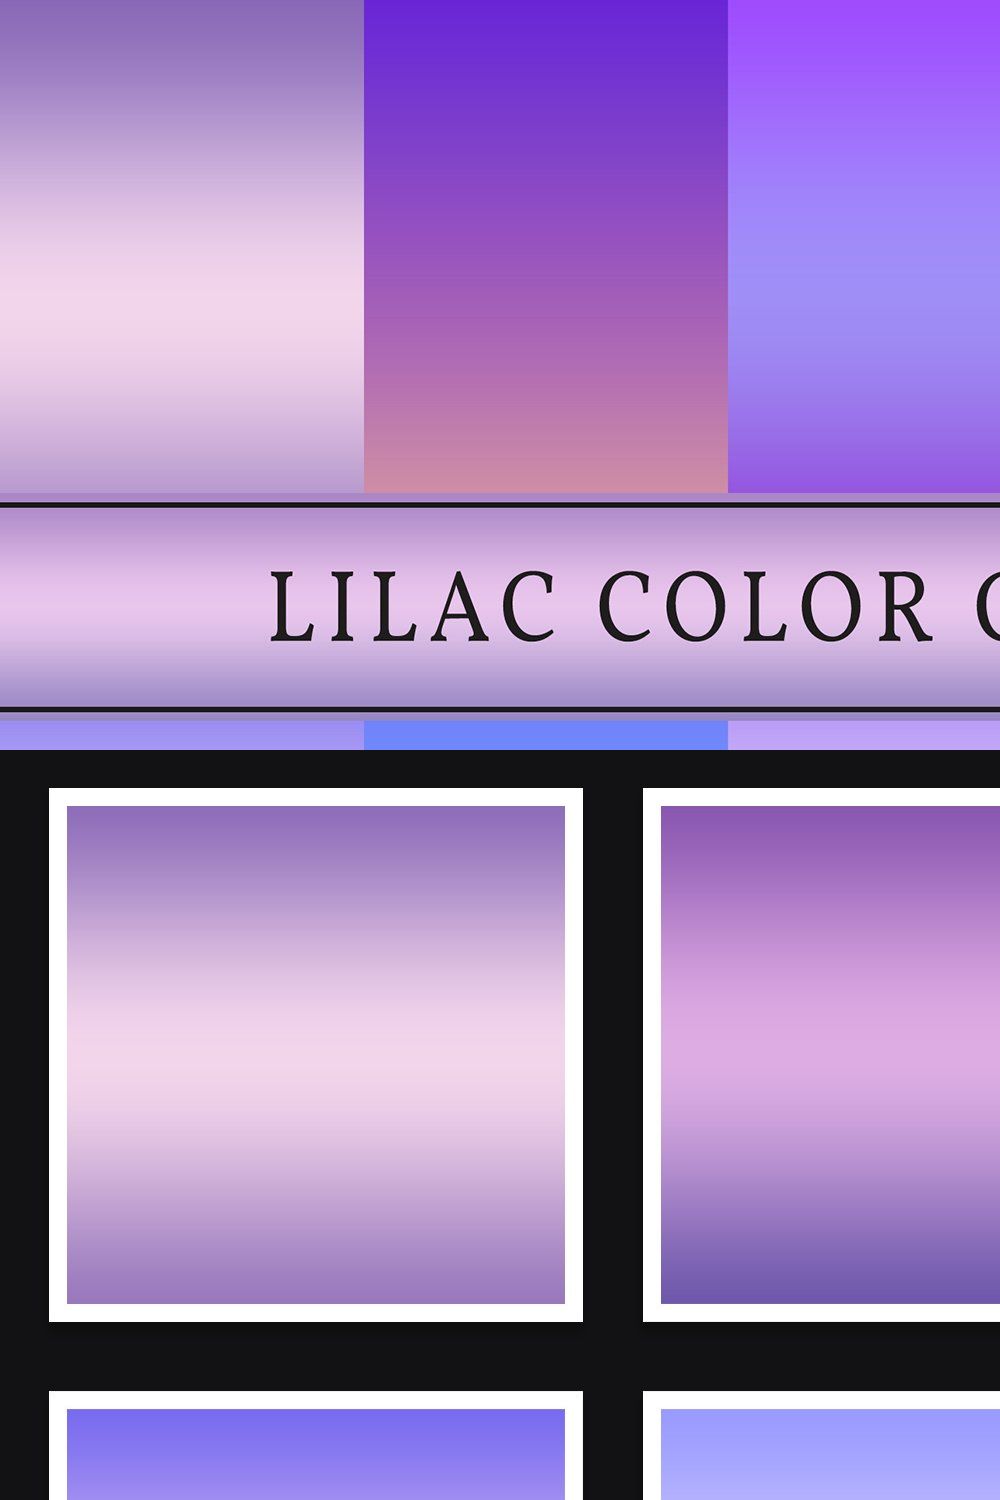 Lilac Color Gradients pinterest preview image.